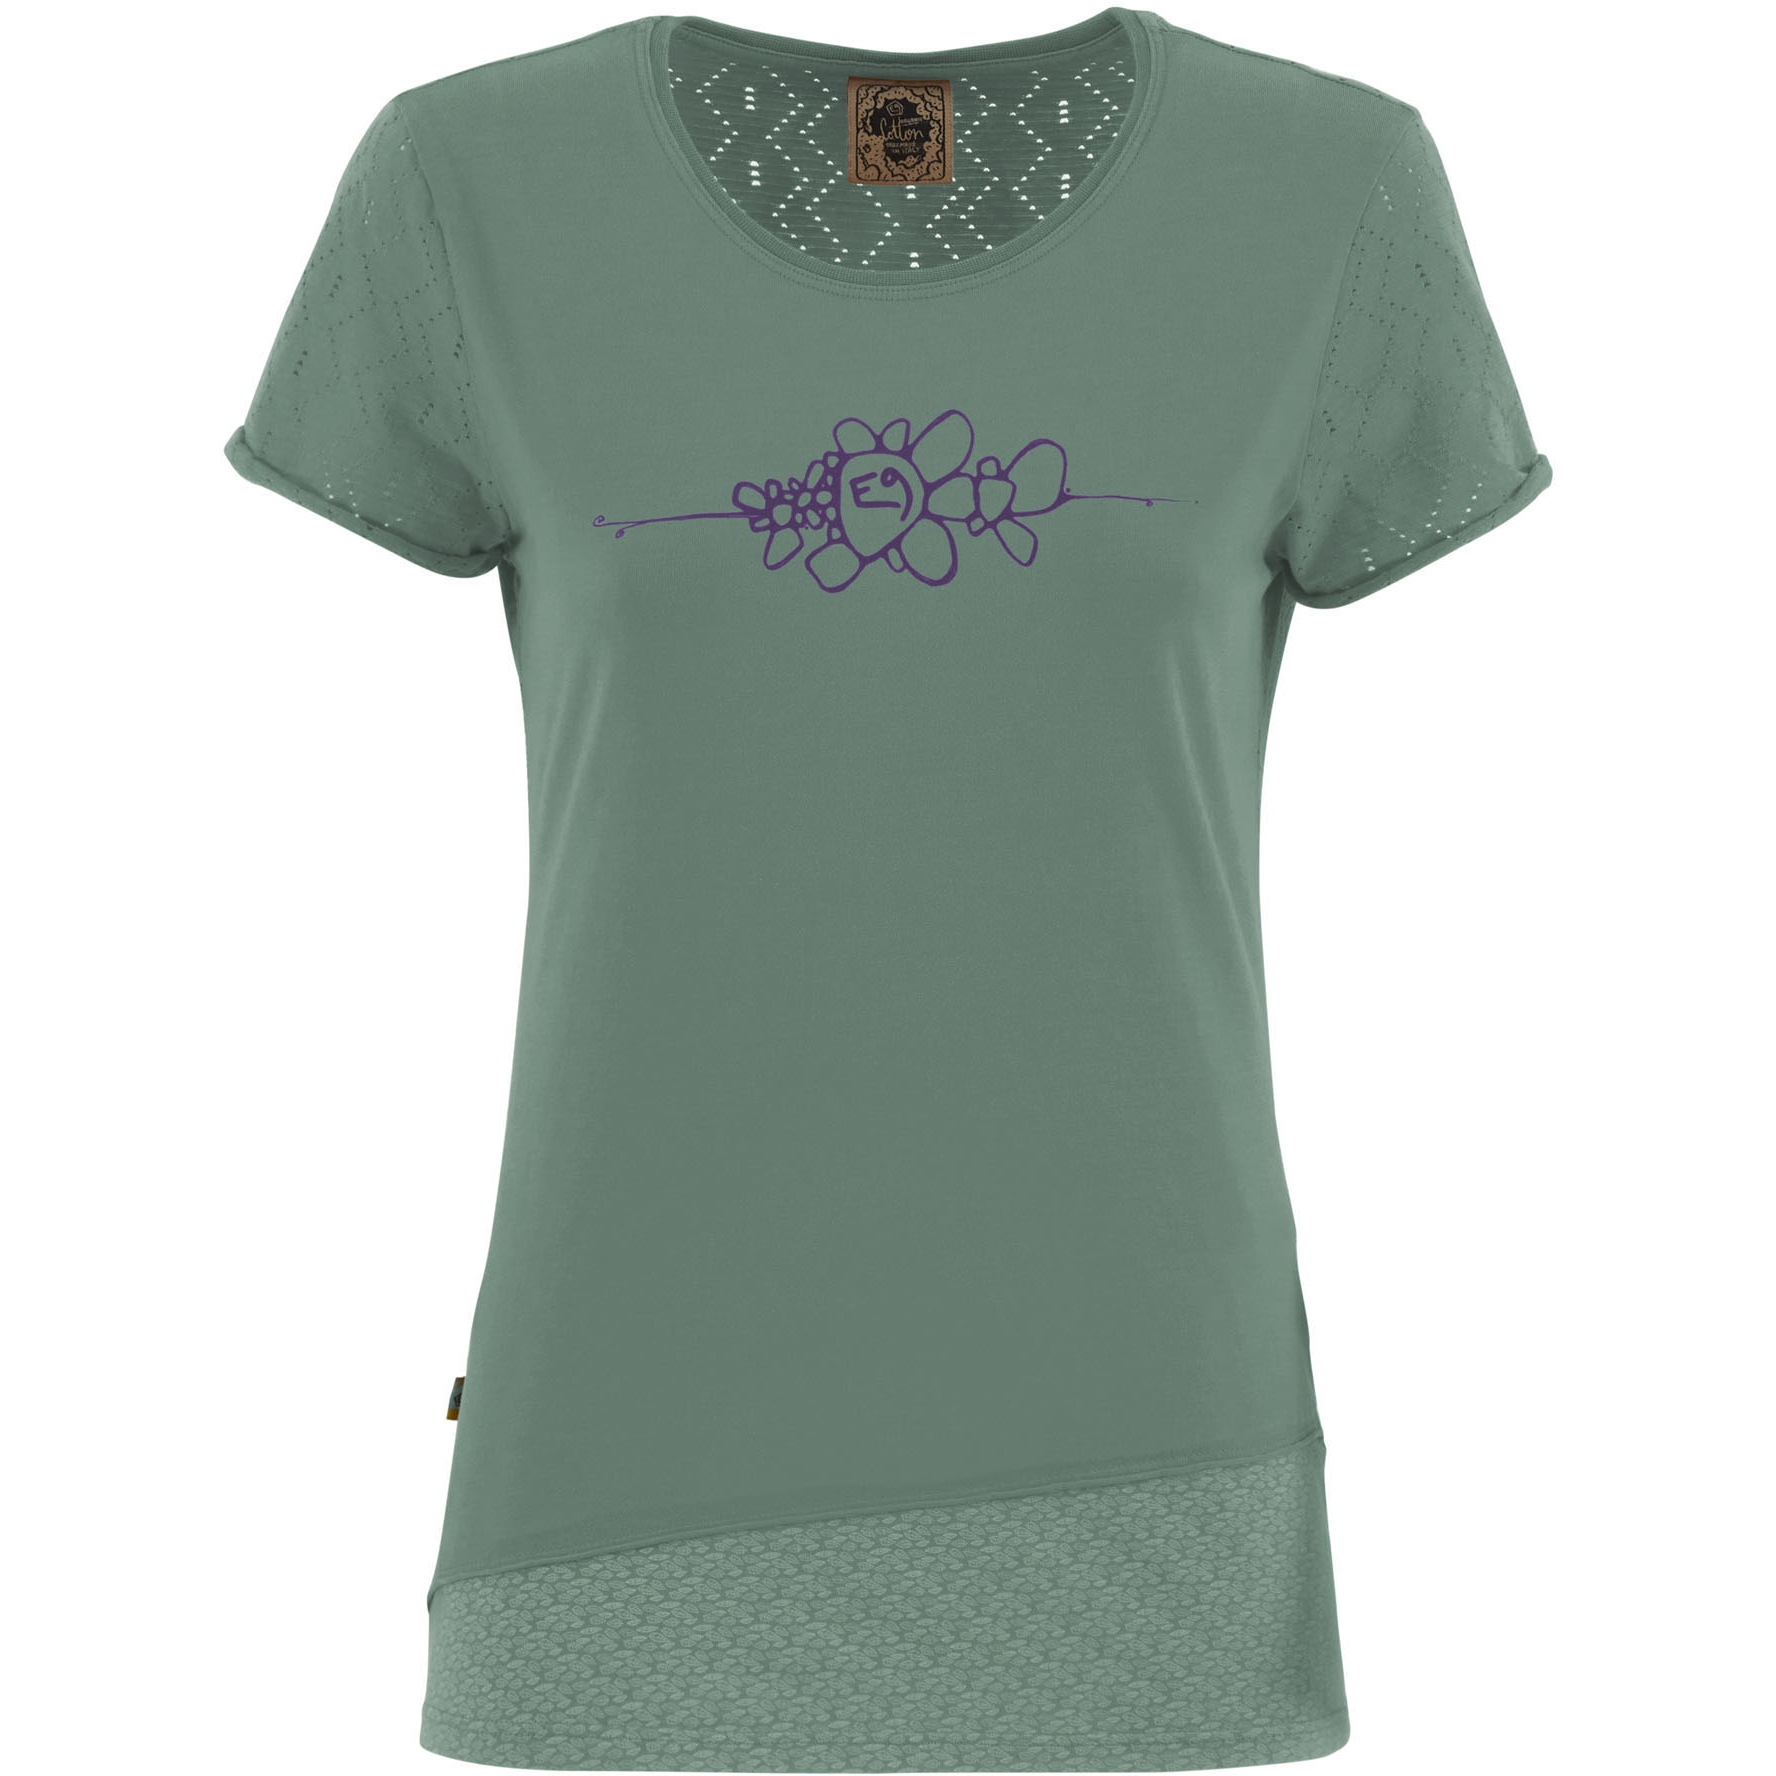 Produktbild von E9 Bonny2.3 T-Shirt Damen - Thymus